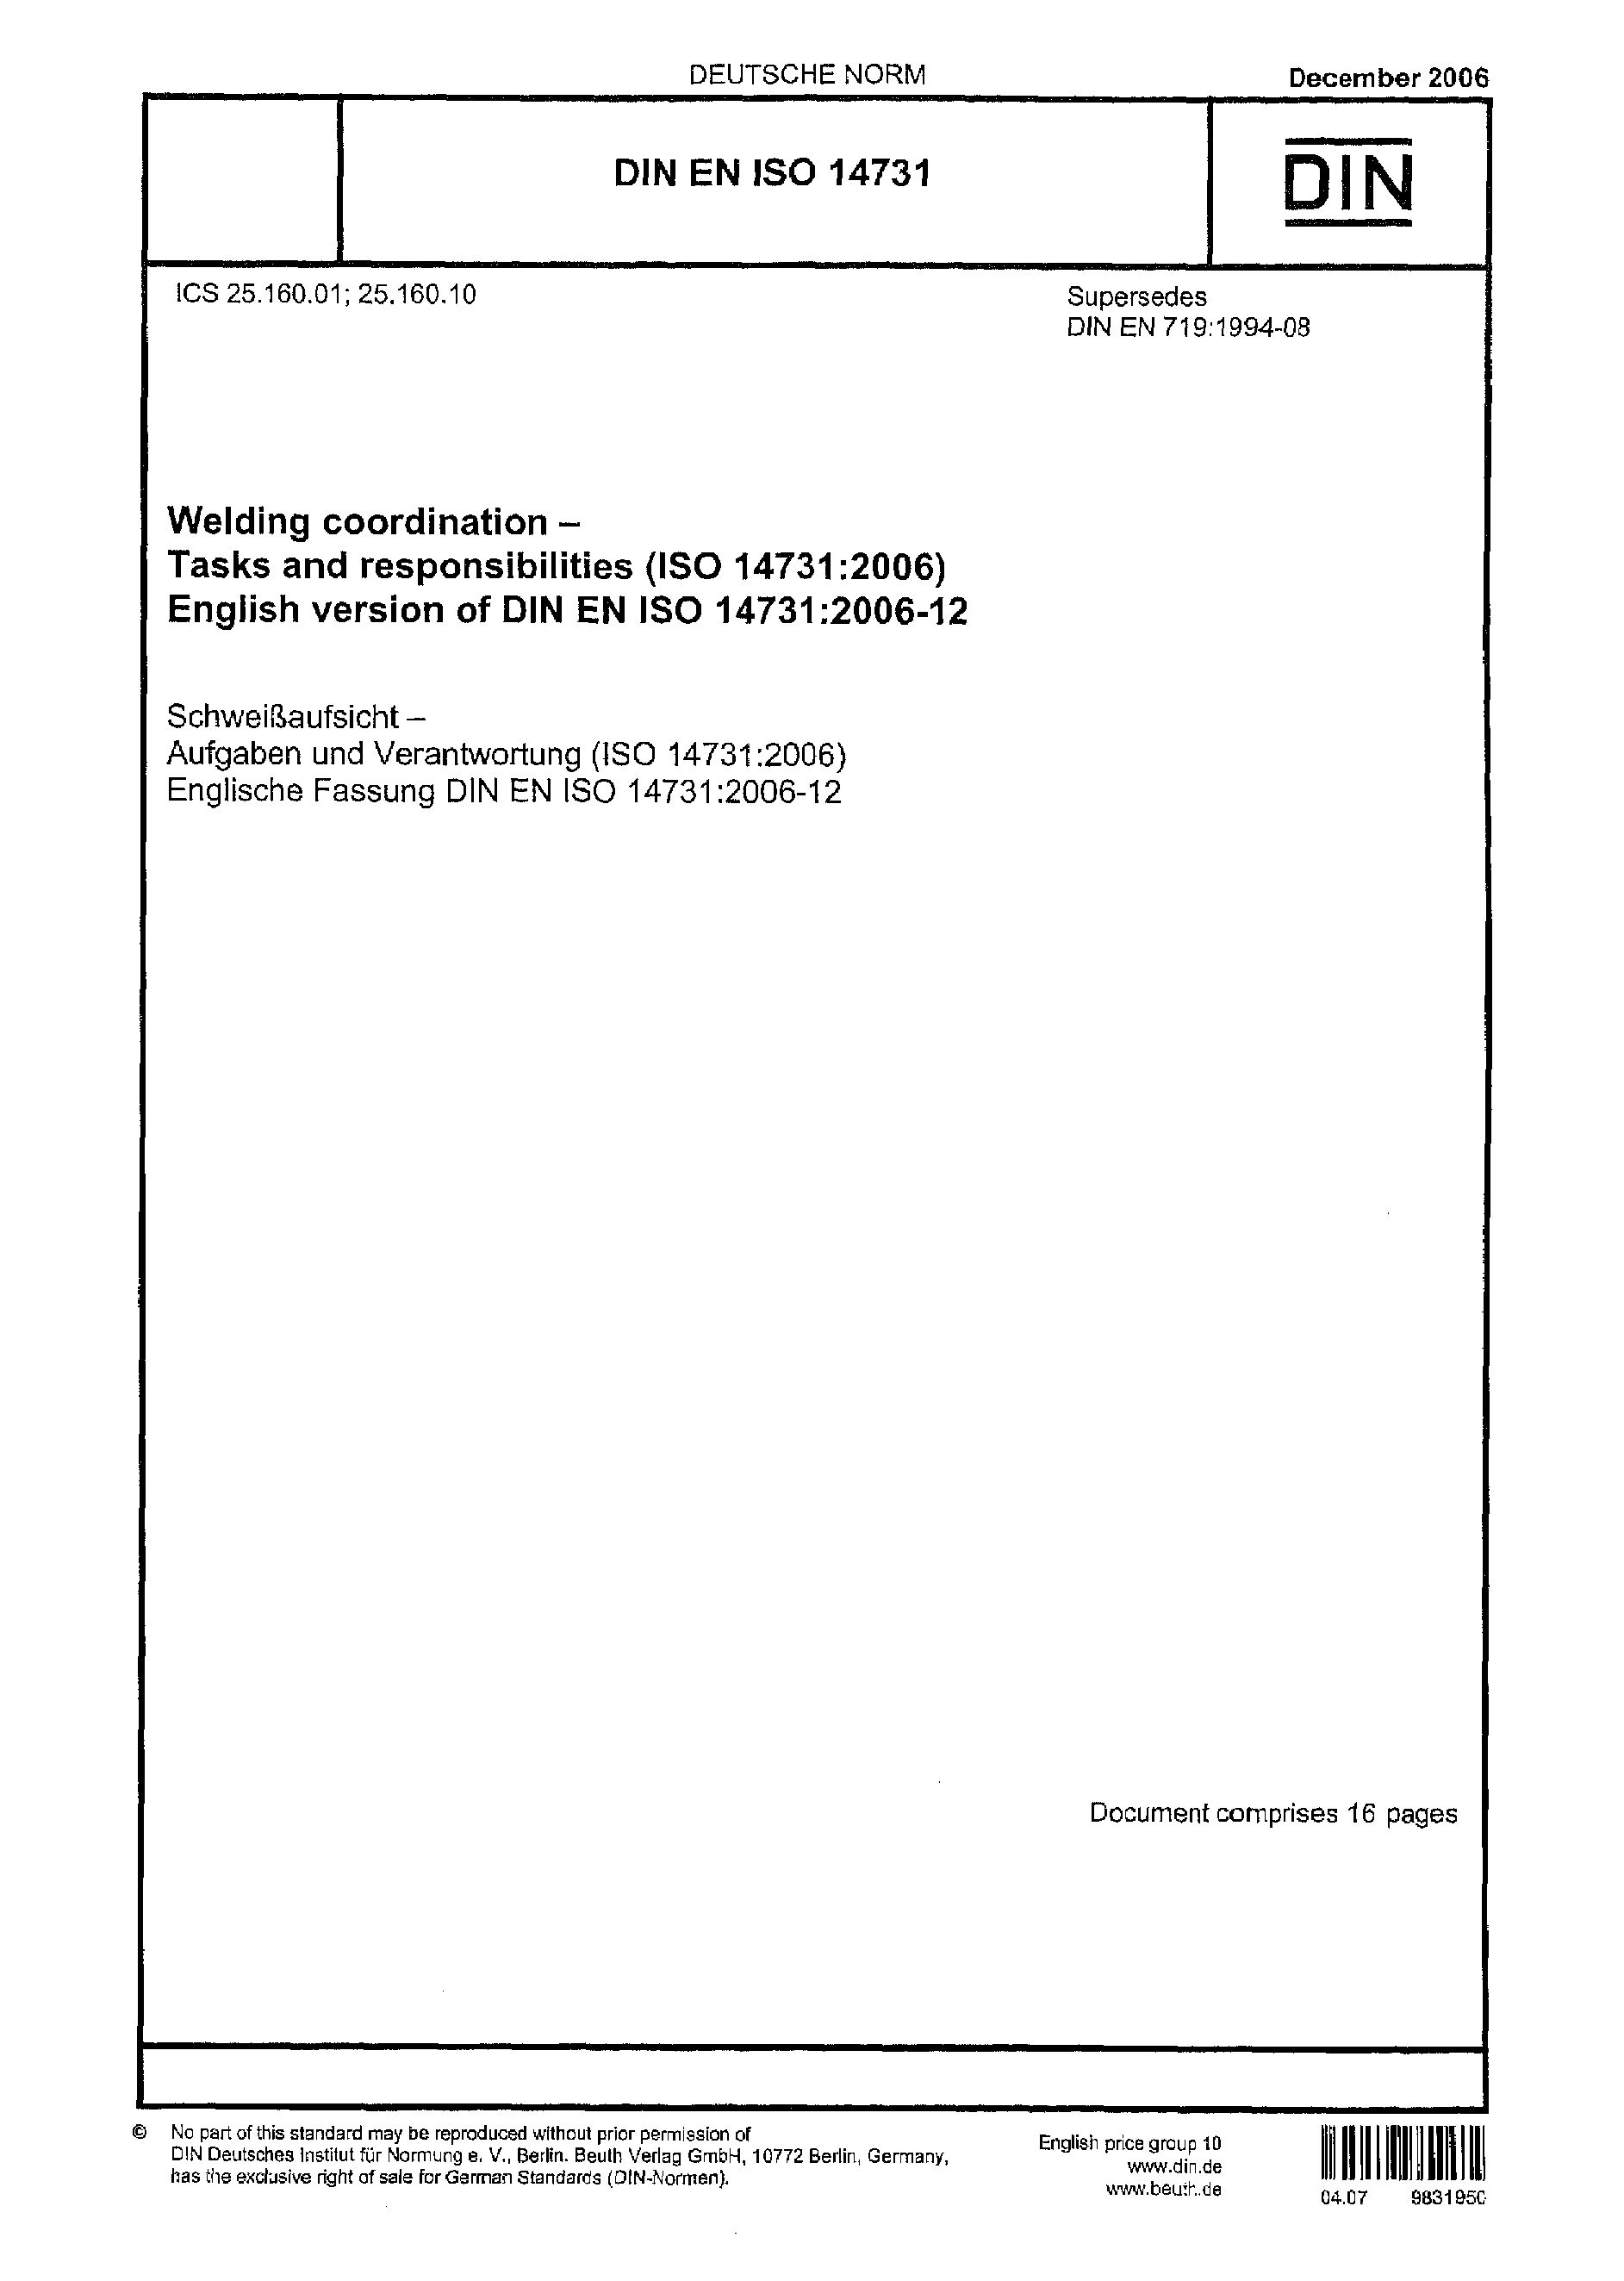 DIN EN ISO 14731-2006